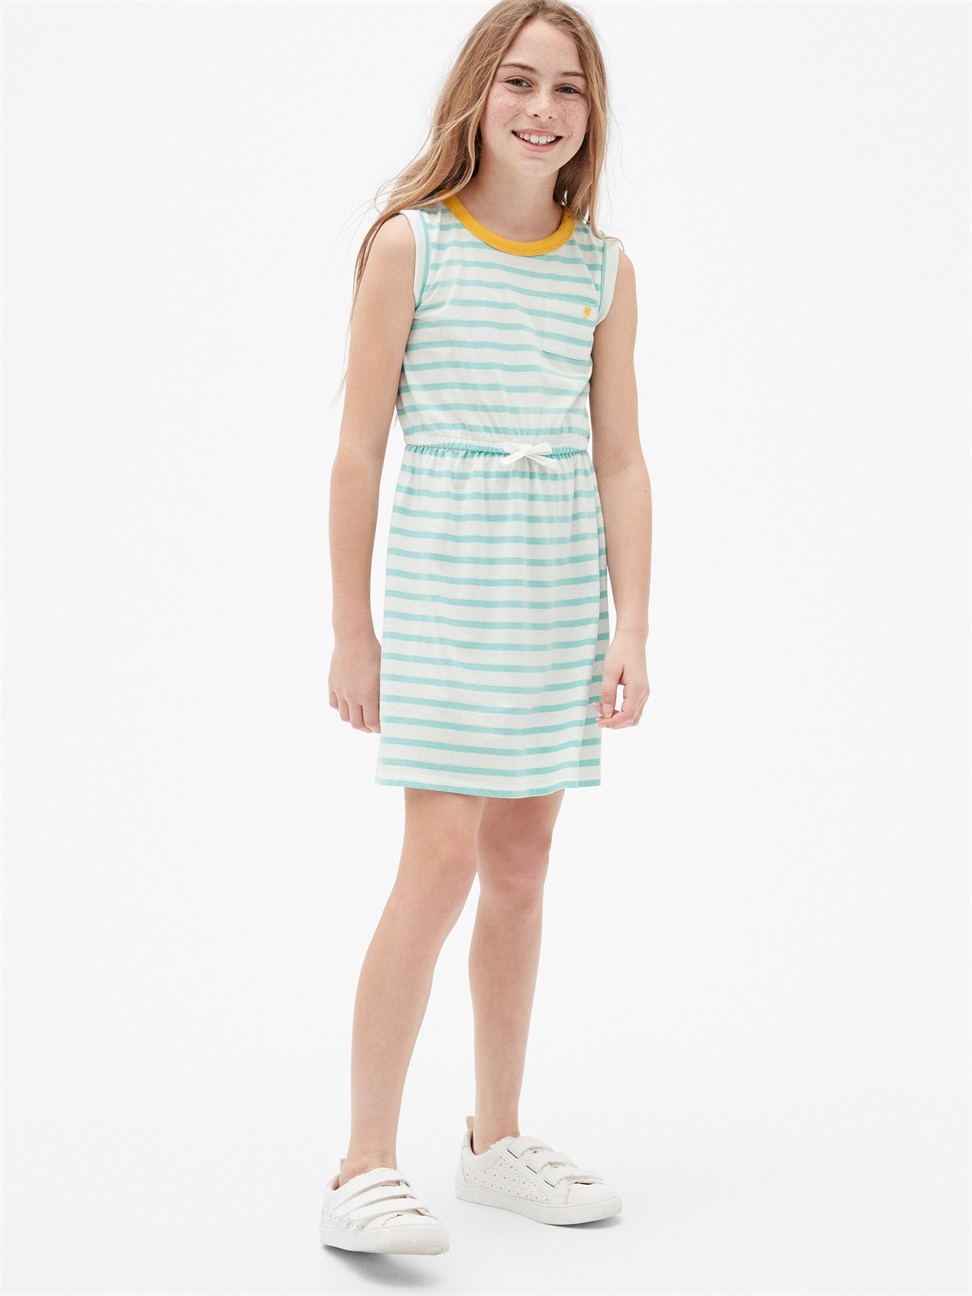 女童裝|舒適條紋無袖圓領洋裝-藍綠色條紋